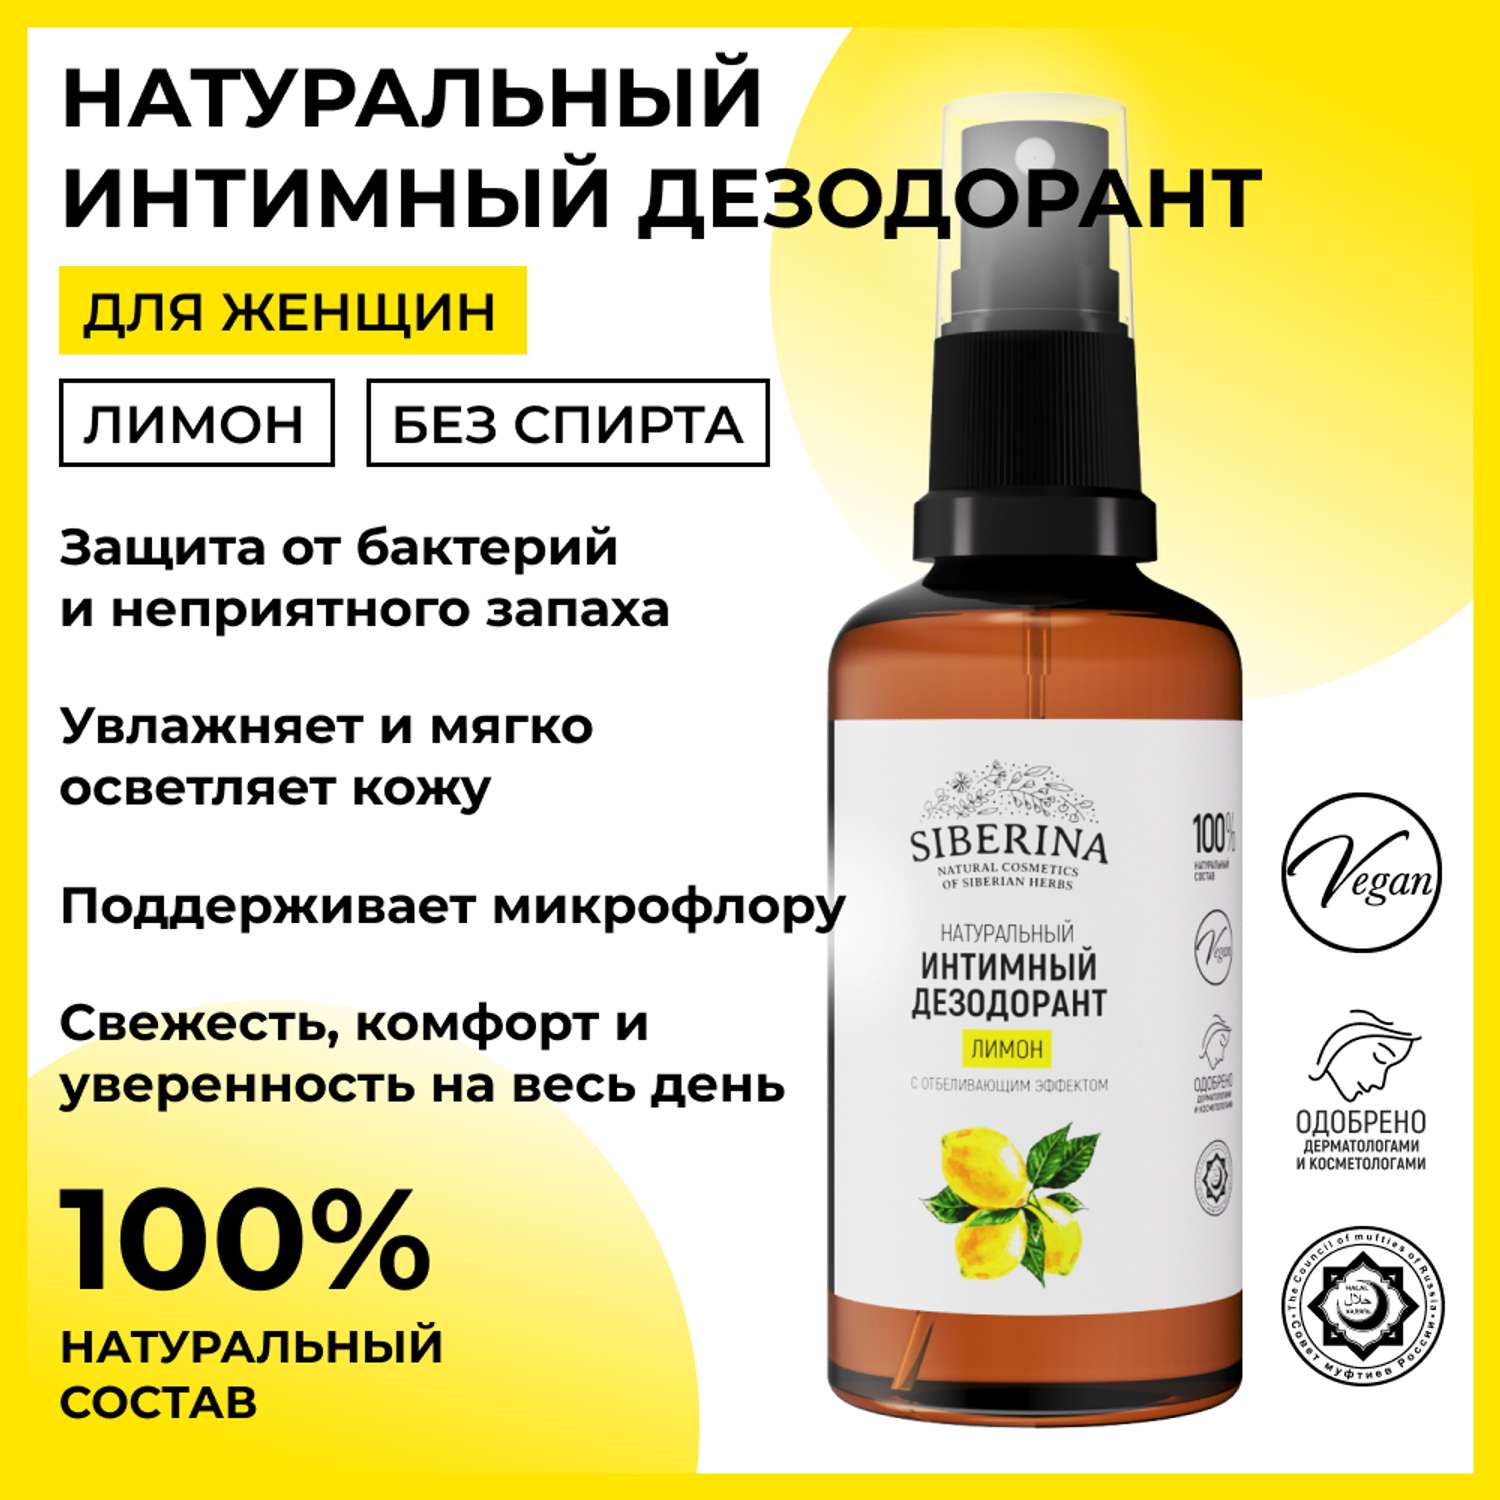 Интимный дезодорант Siberina натуральный «Лимон» с отбеливающим эффектом 50 мл - фото 2